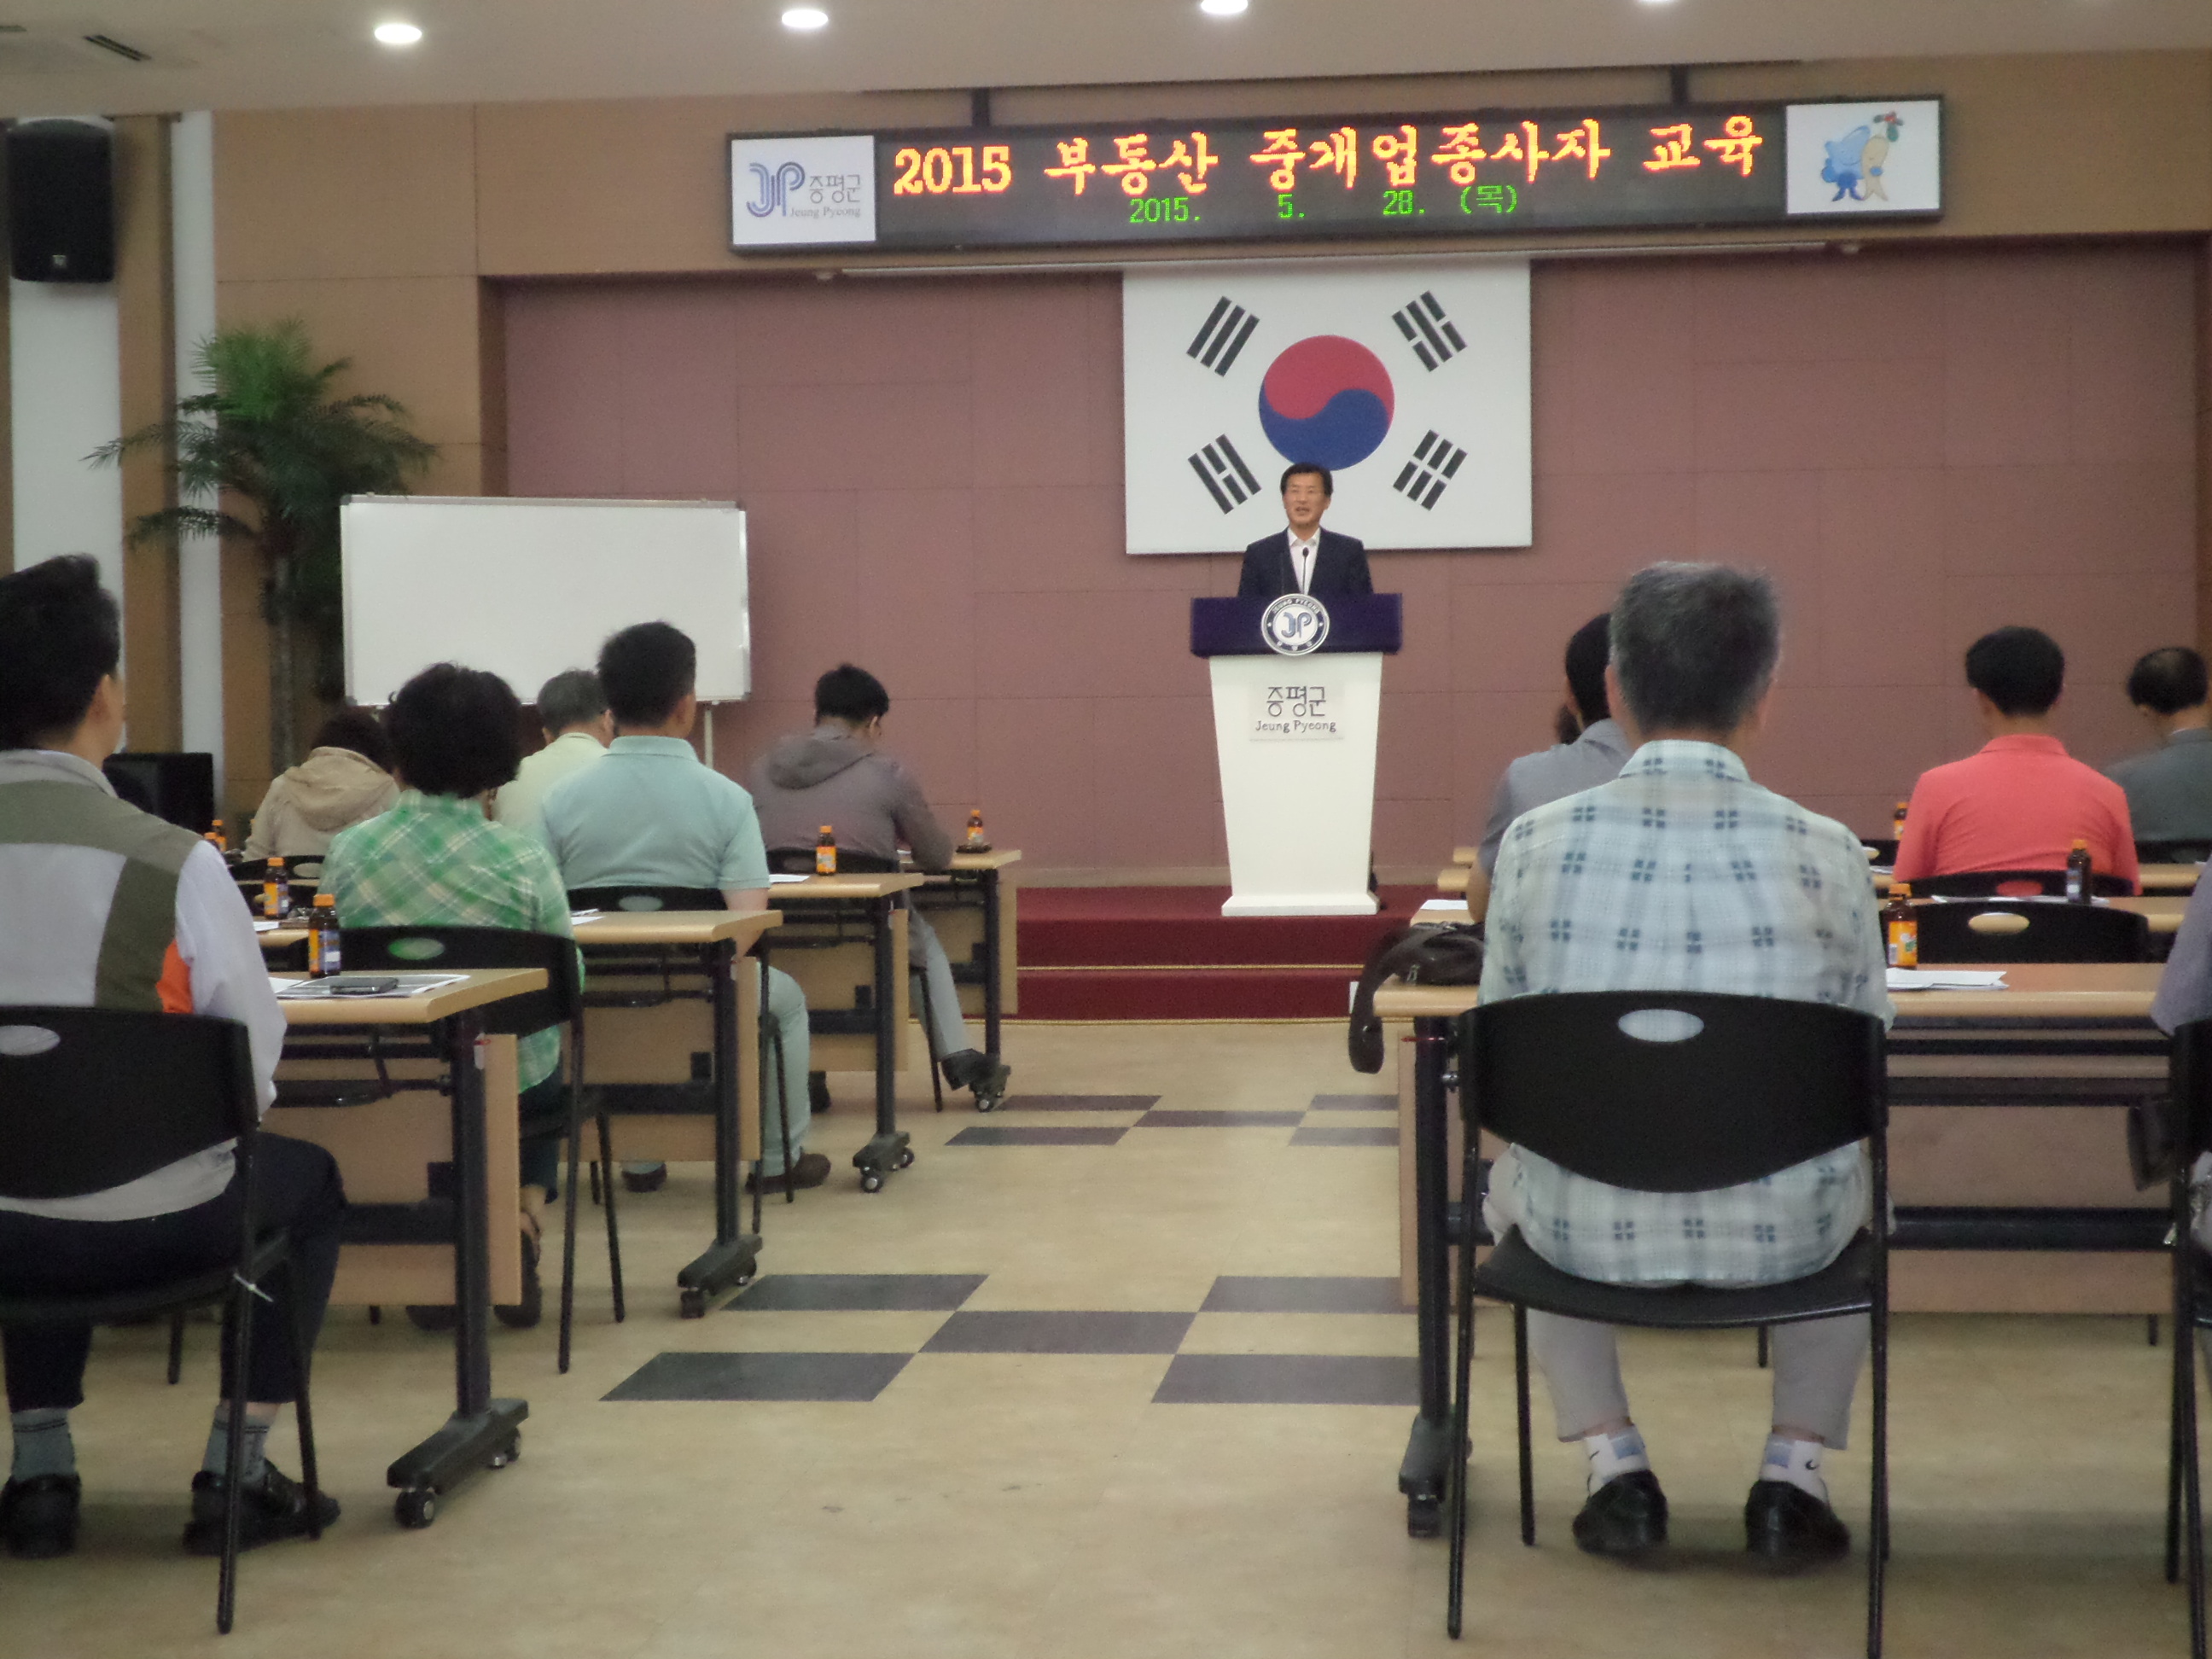 2015부동산 중개업종사자교육 및 준법실천결의대회 개최